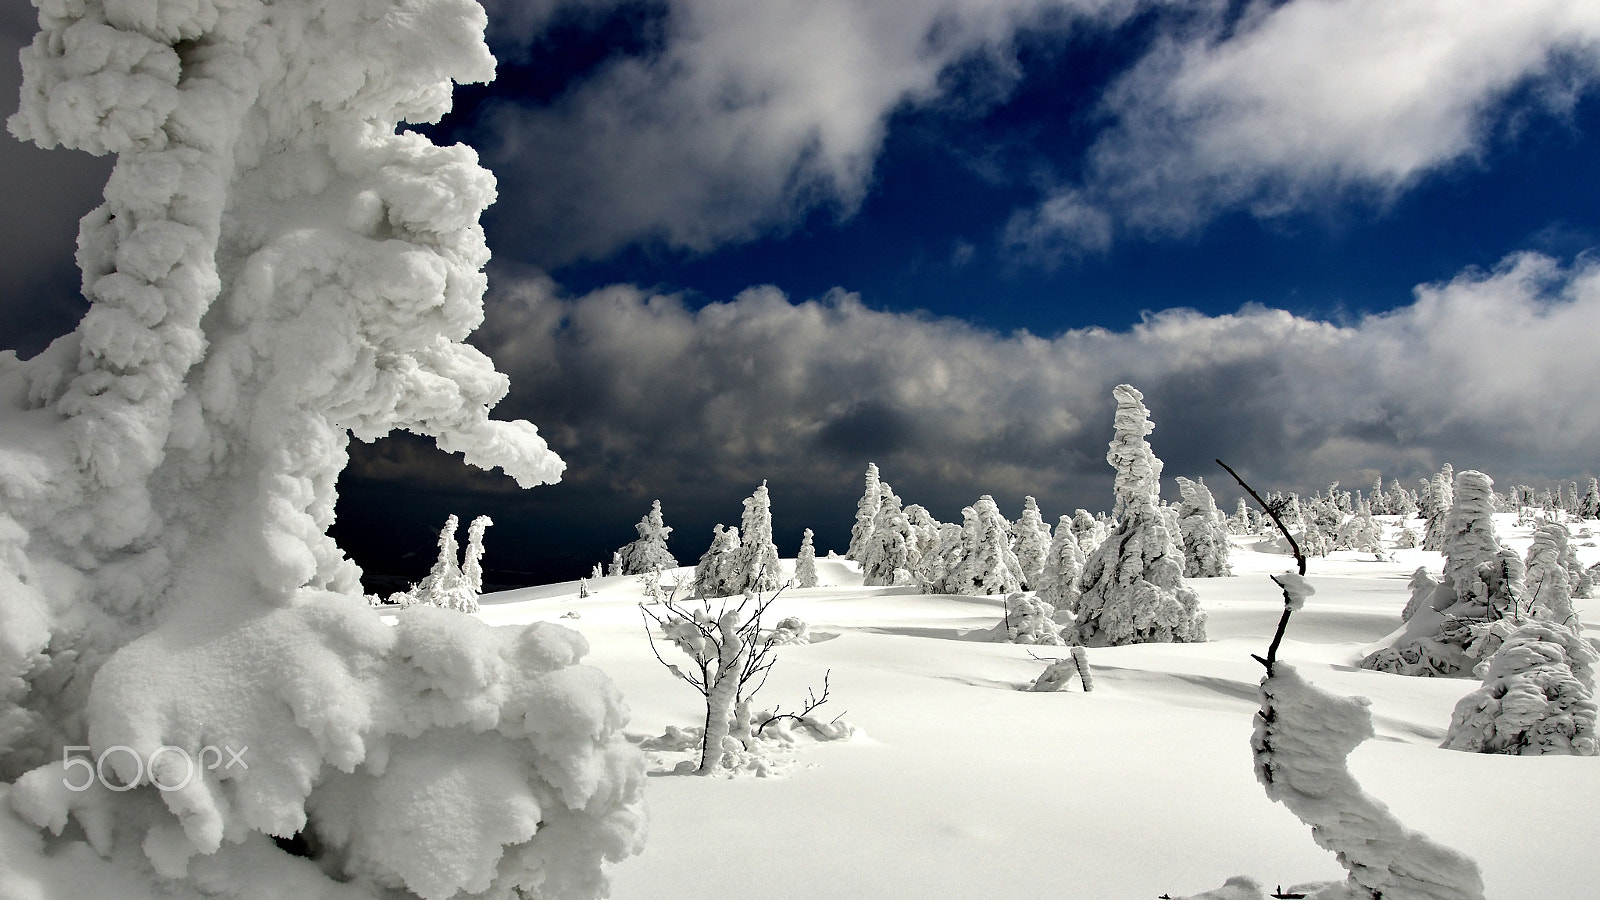 Nikon D7000 sample photo. After snow storm photography